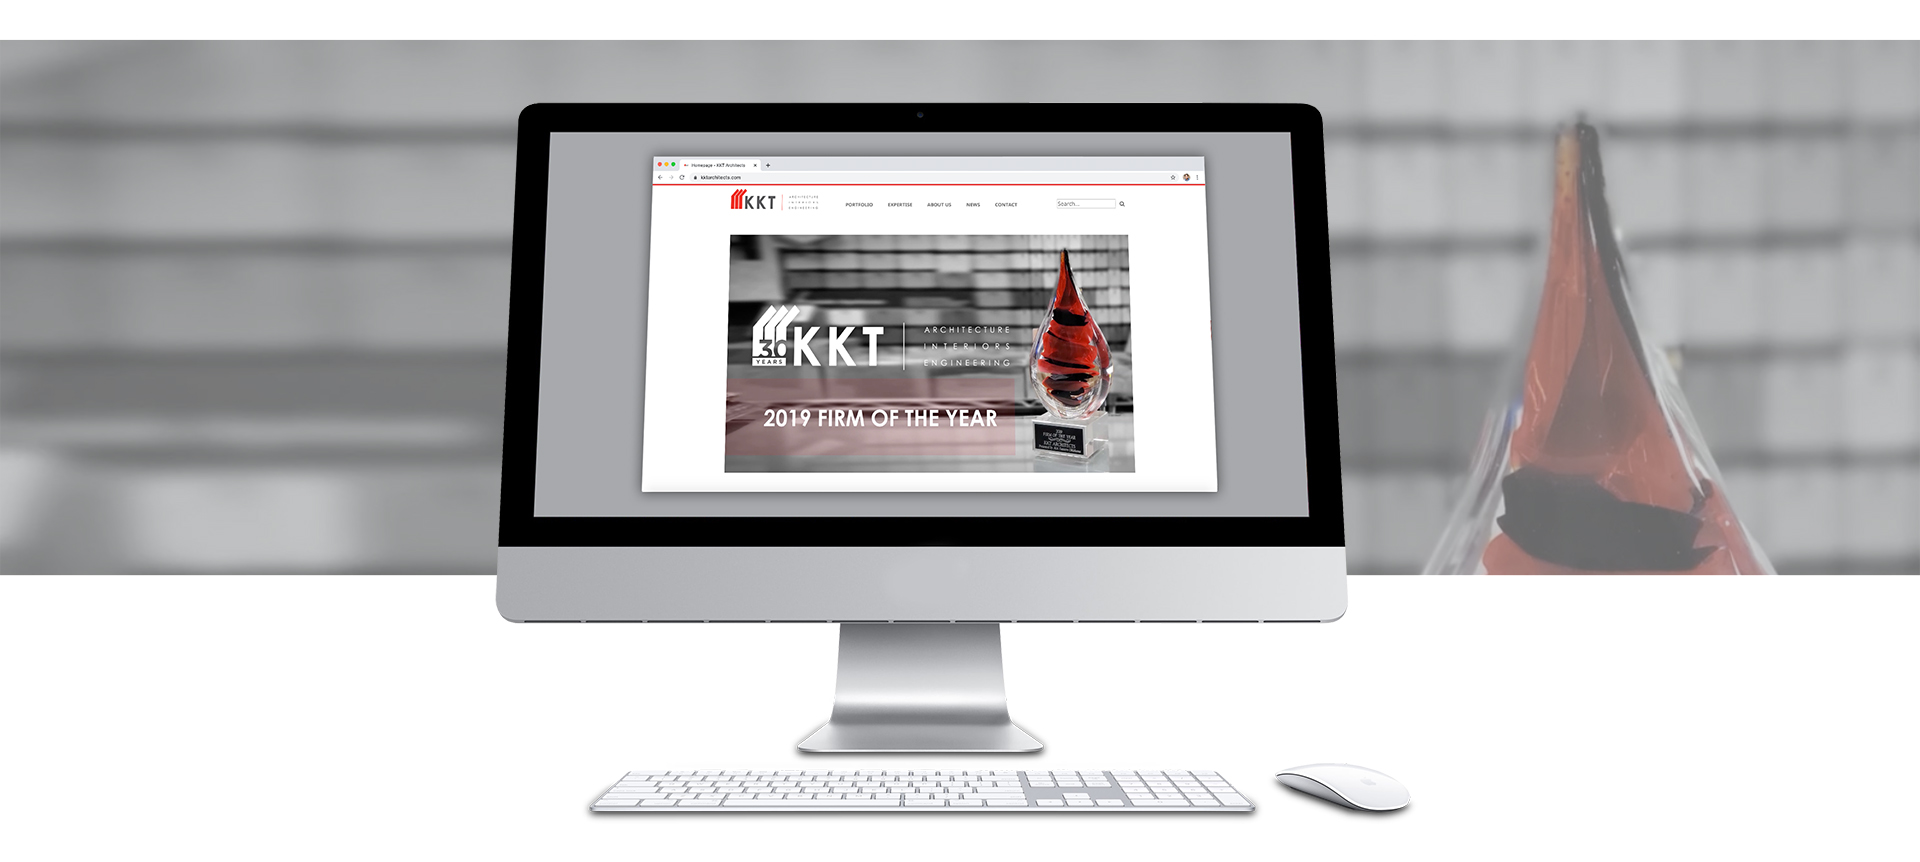 KKT website 2